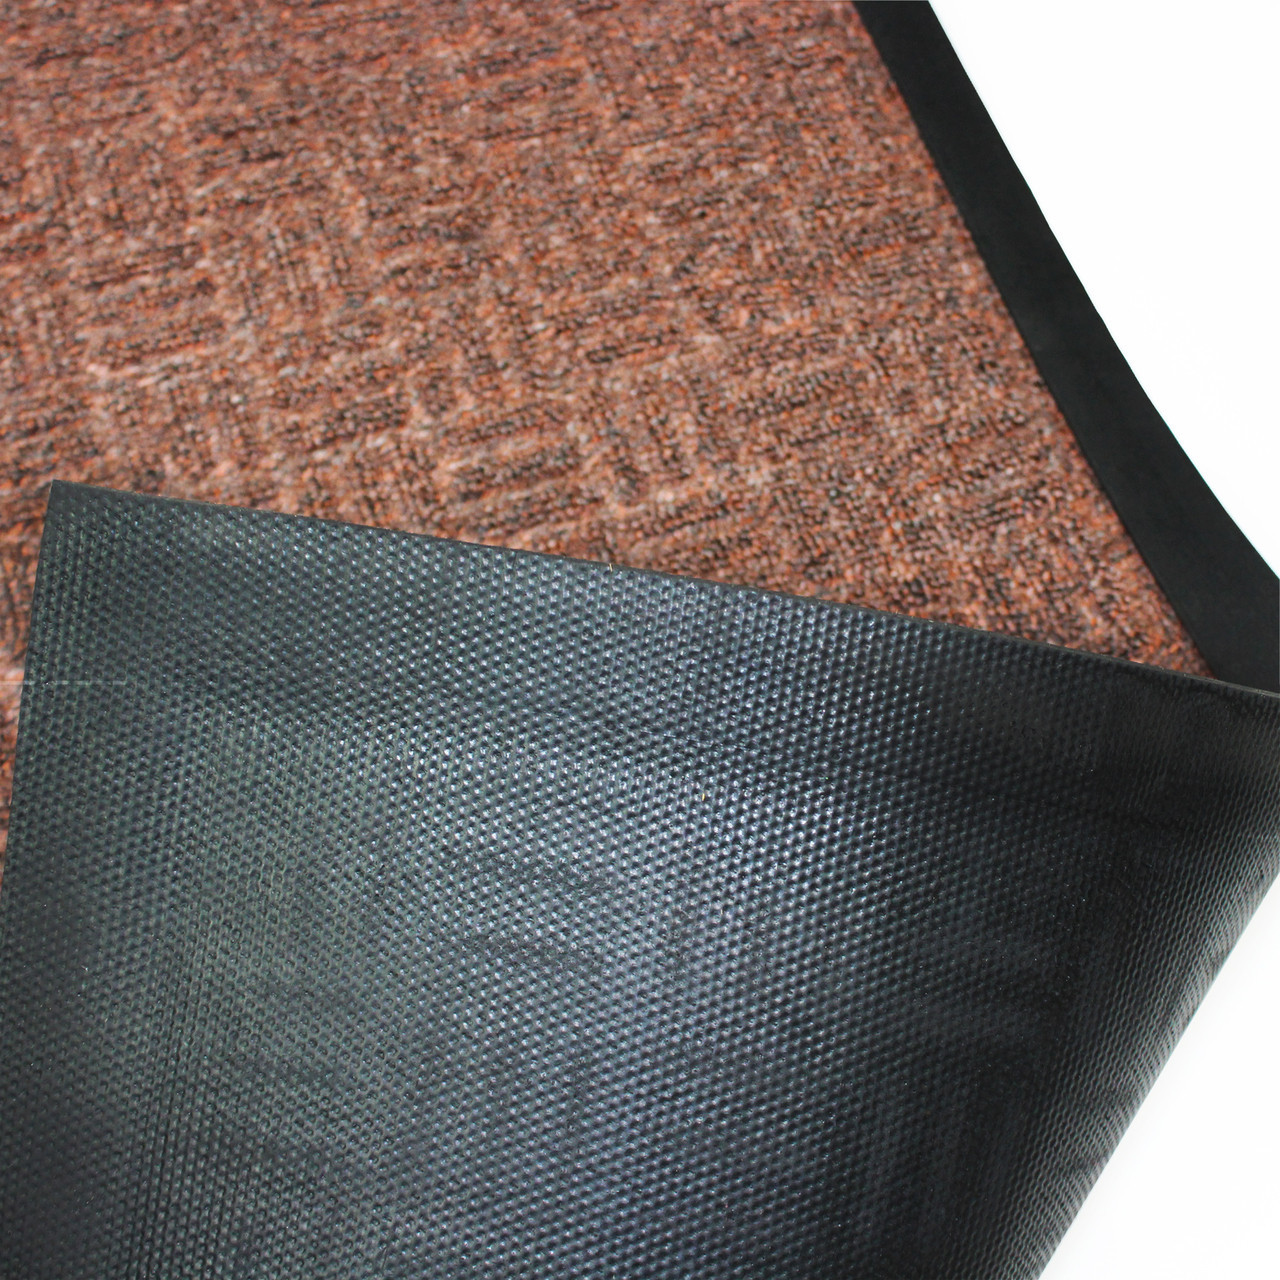 Ultralux ultralux indoor scraper entrance mat, 31 x 47, polypropylene  fibers and anti-slip vinyl backed indoor doormat